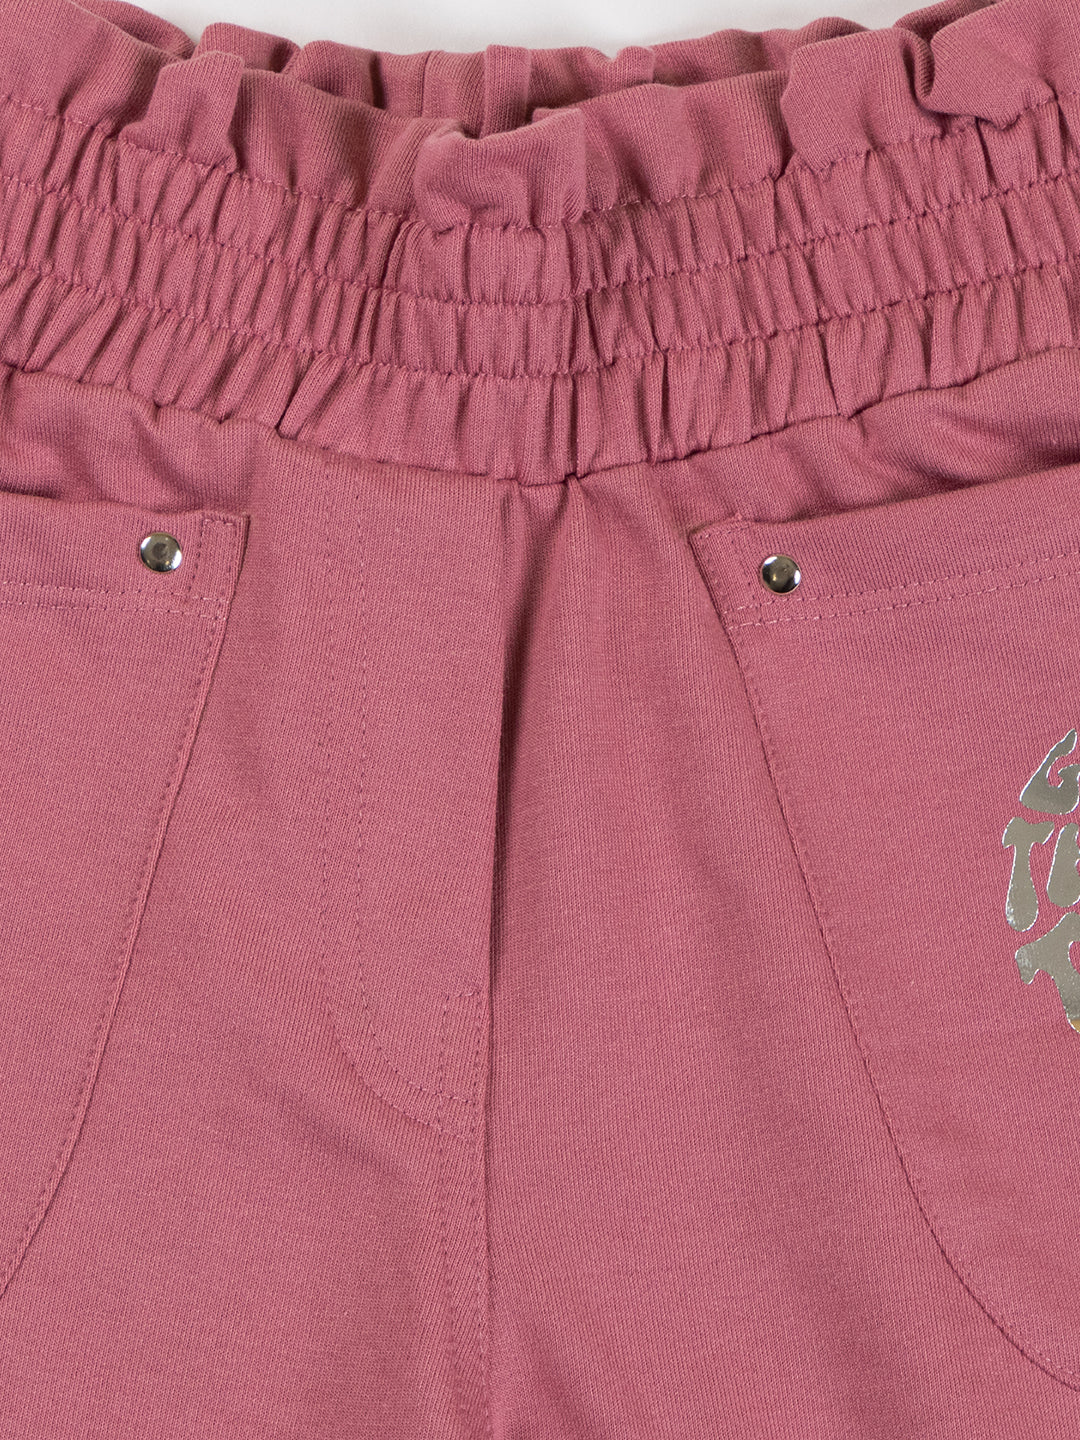 Pampolina Girls Solid Shorts-OnionPink